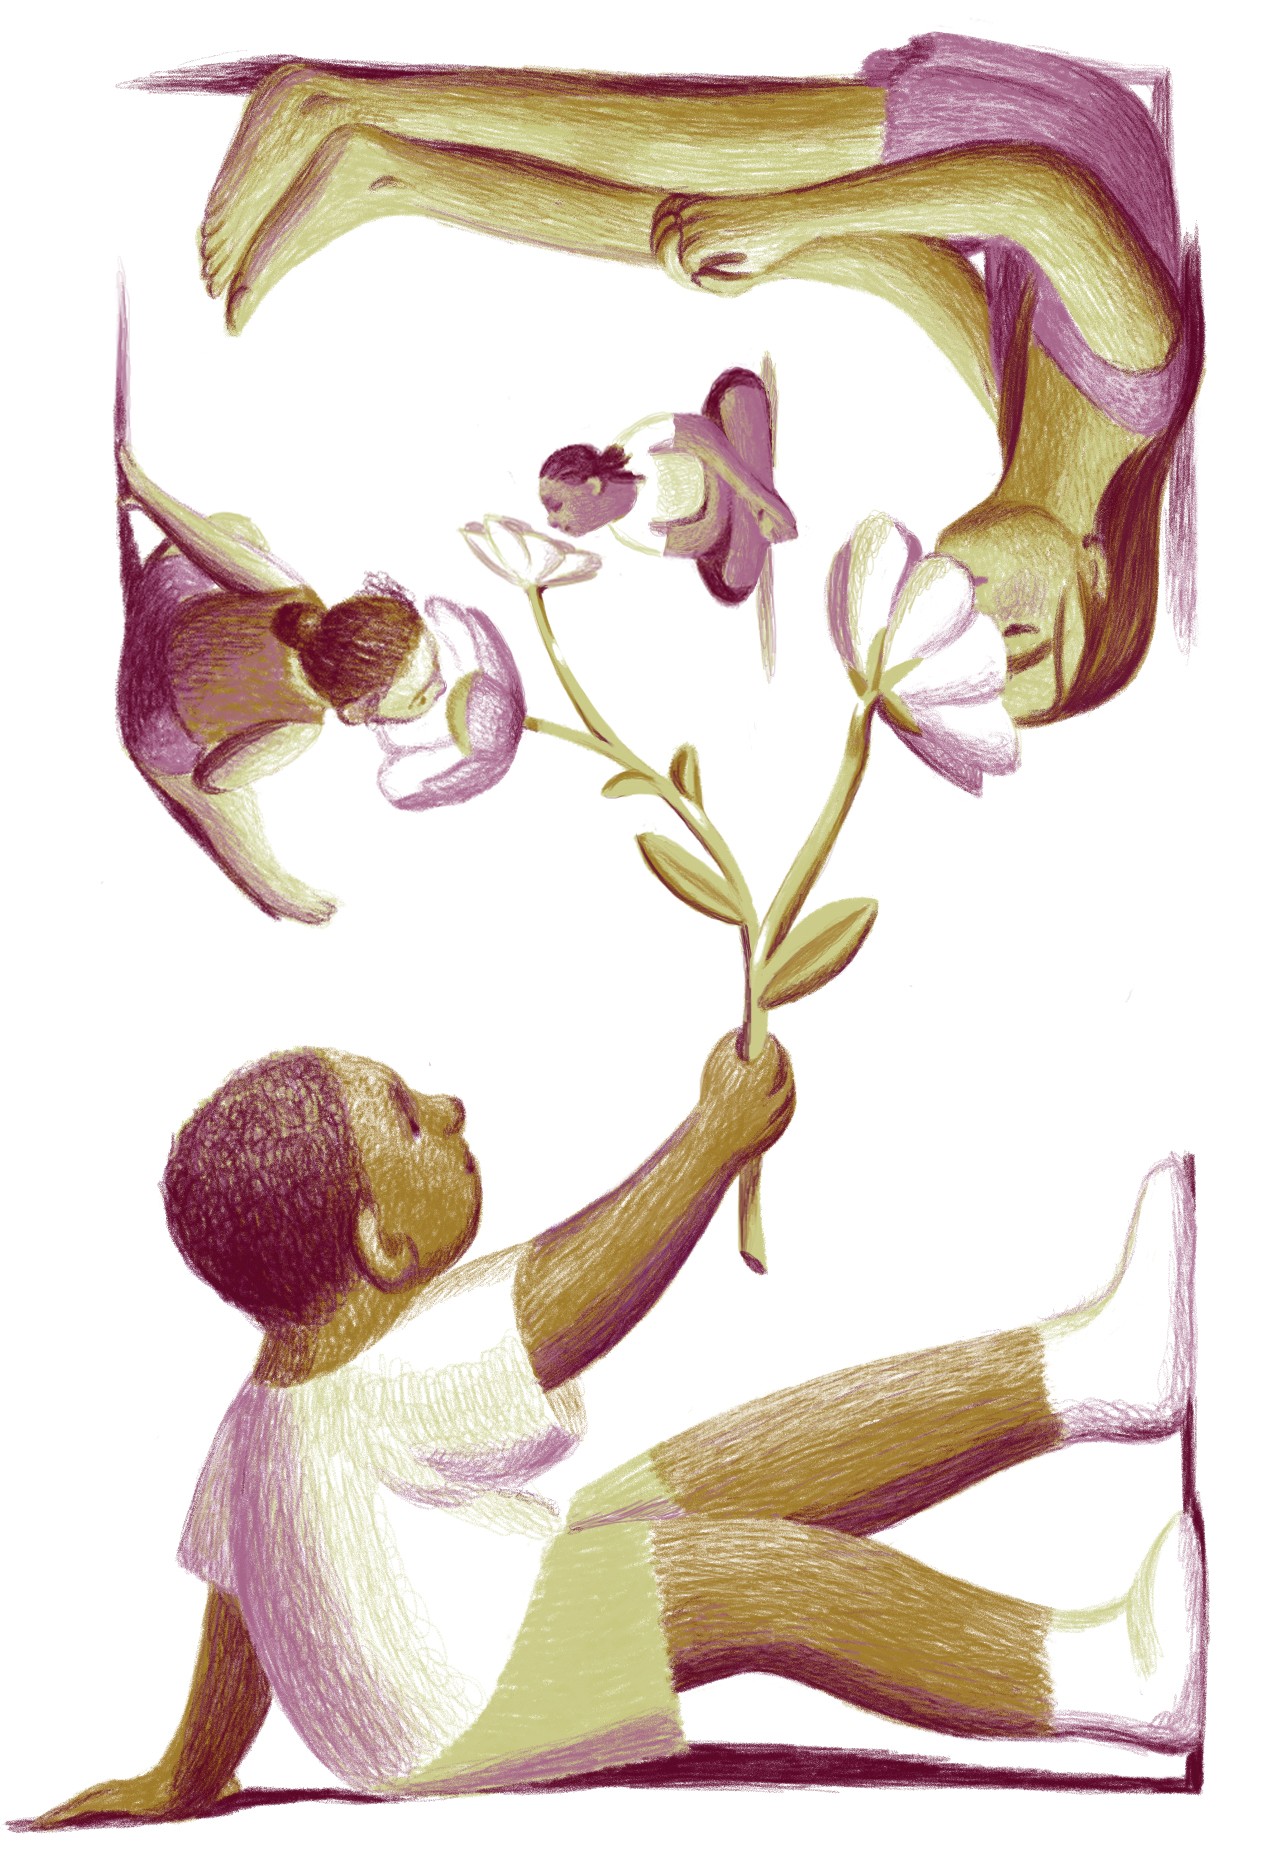 Illustration by Jillian Tamaki of children holding flowers